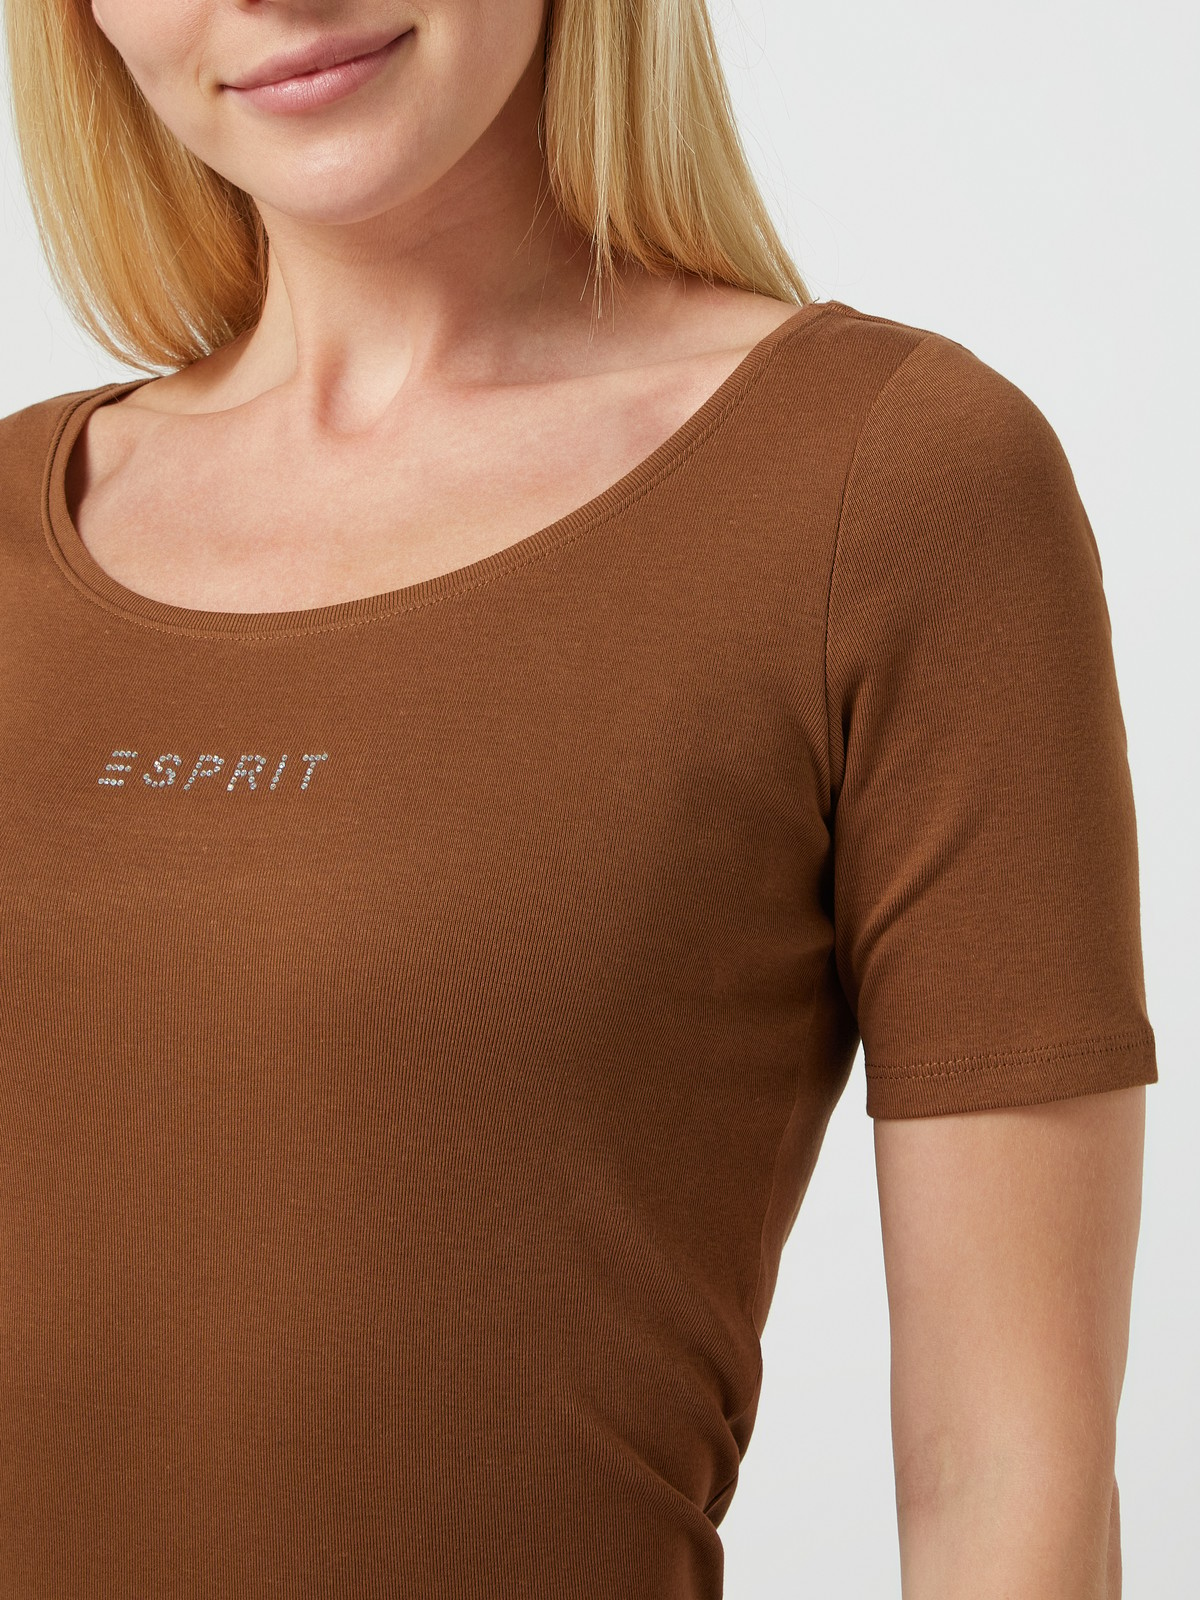 تی شرت زنانه 22629 مارک ESPRIT